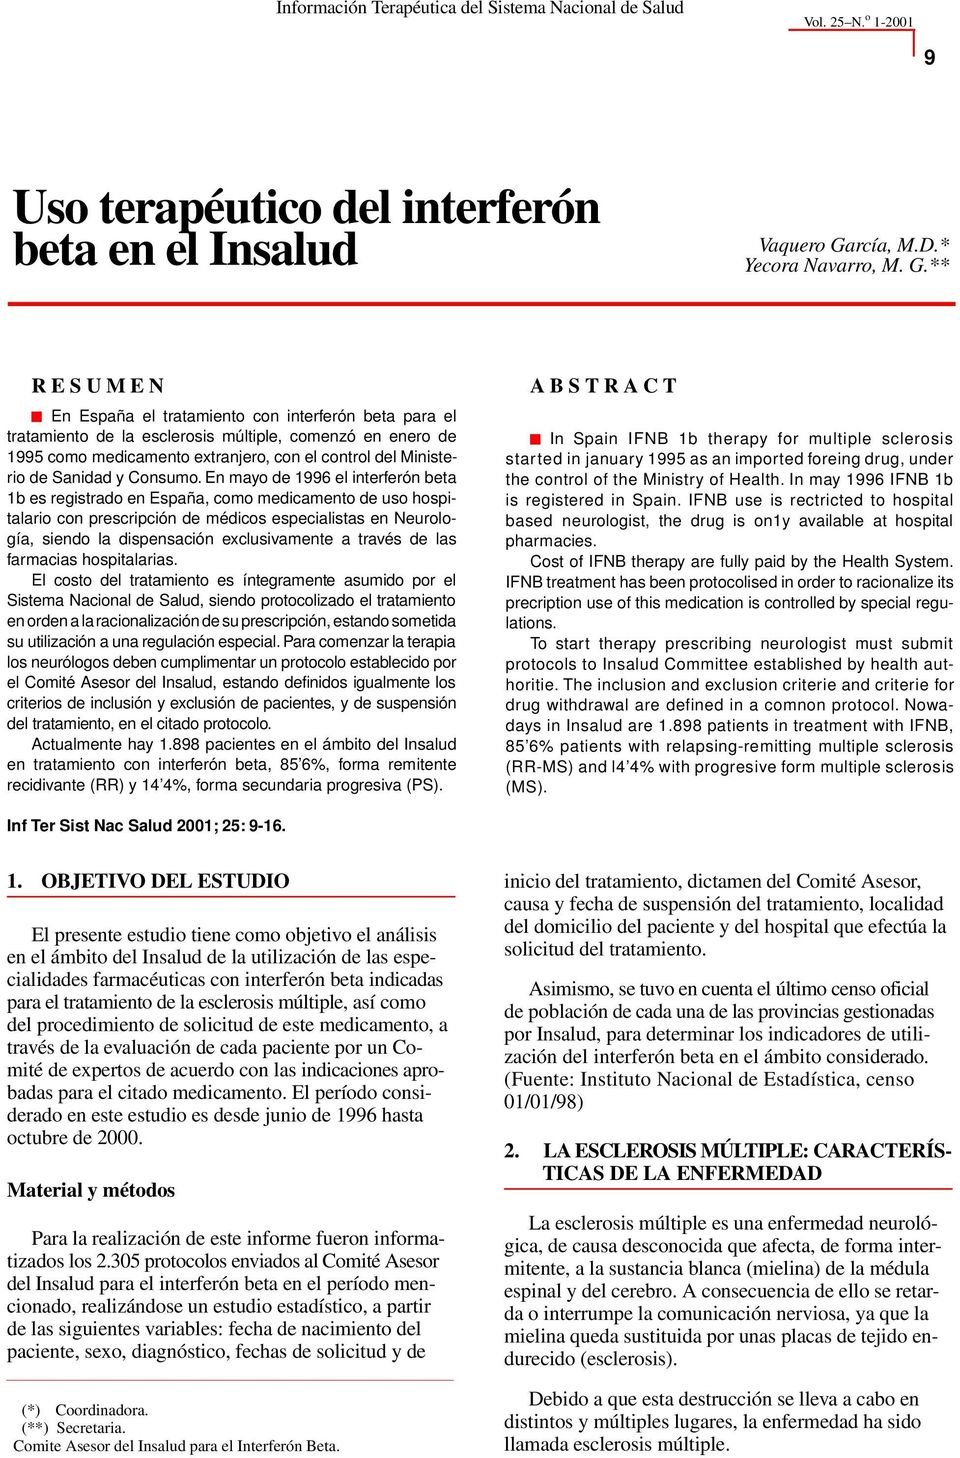 ** R E S U M E N En España el tratamiento con interferón beta para el tratamiento de la esclerosis múltiple, comenzó en enero de 1995 como medicamento extranjero, con el control del Ministerio de